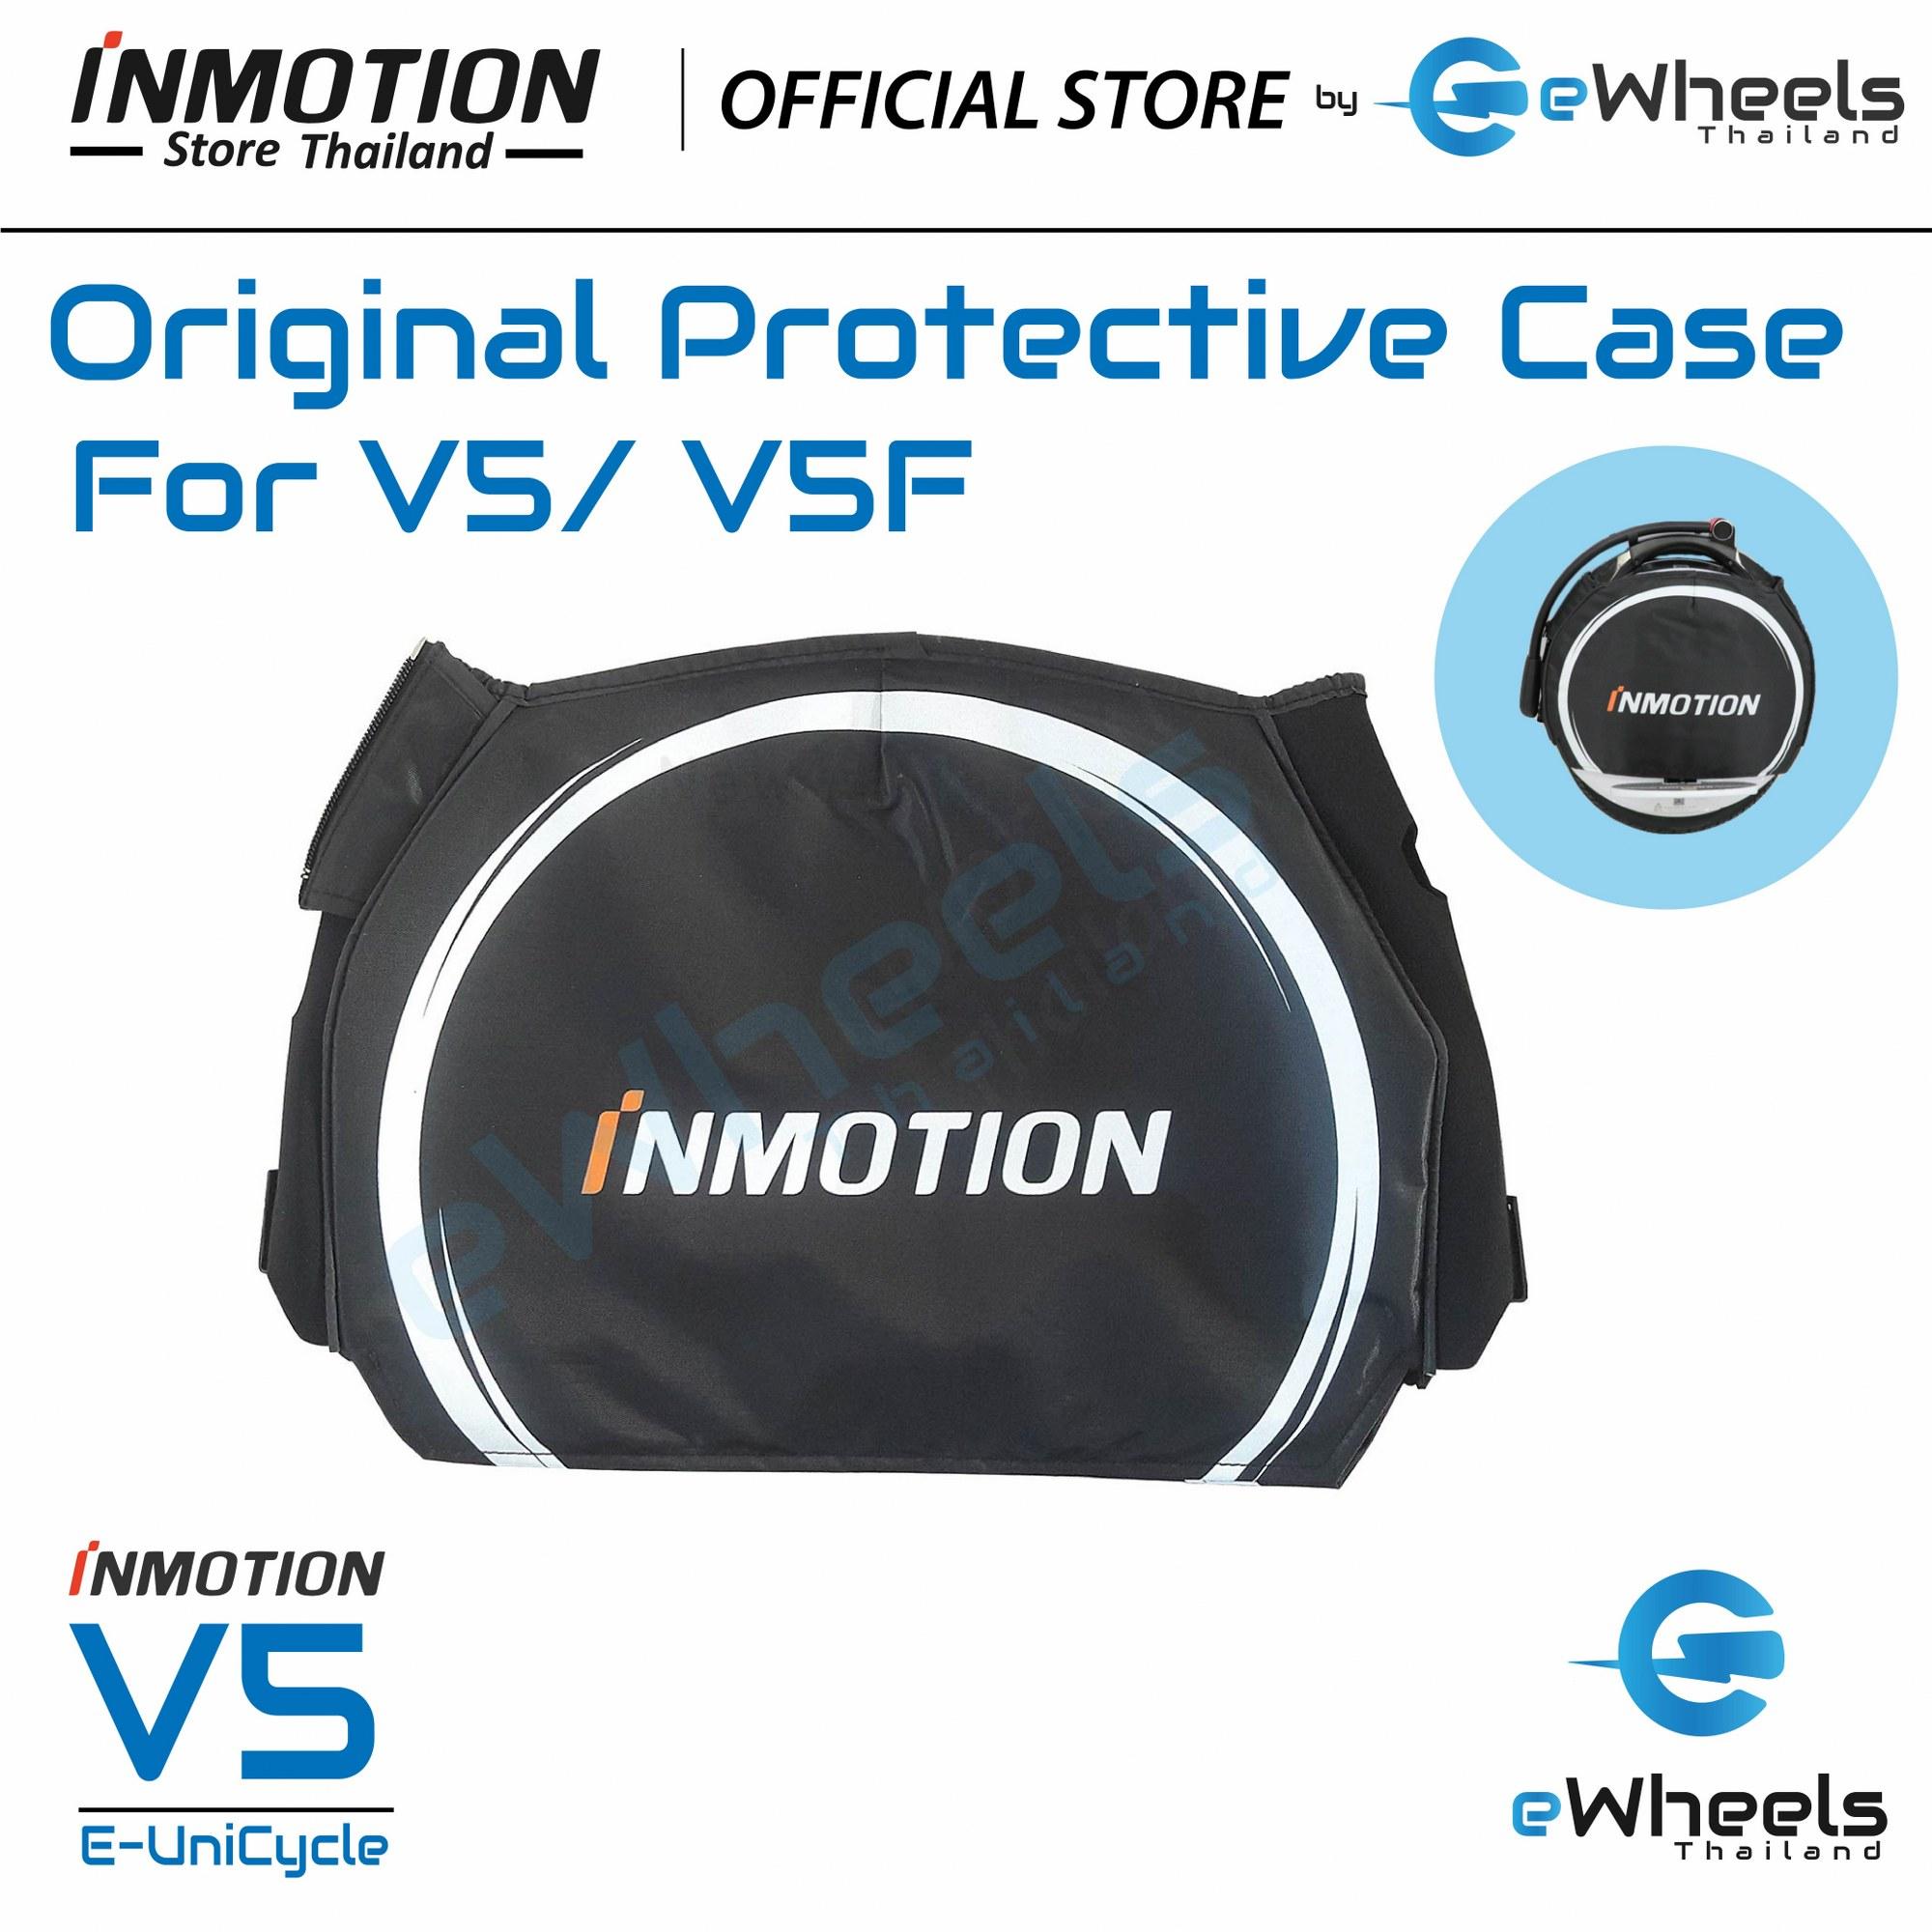 เคสกันกระแทก สำหรับ V5/V5F ของแท้ Original INMOTION V5/V5F Protective case